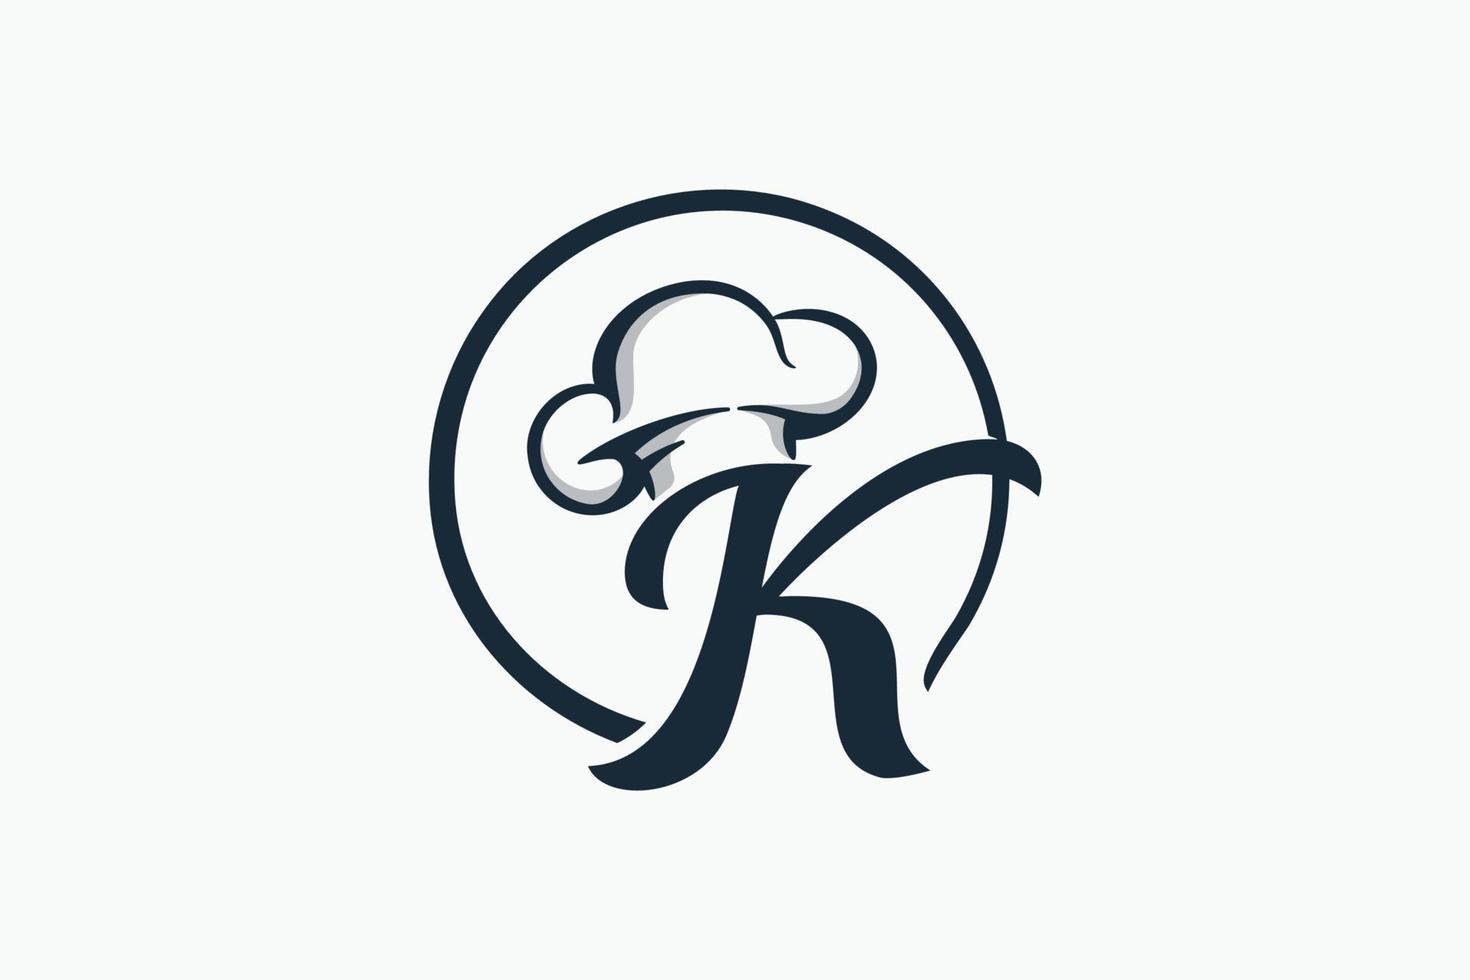 logo du chef avec une combinaison de la lettre k et du chapeau de chef pour toute entreprise, en particulier pour le restaurant, le café, la restauration, etc. vecteur